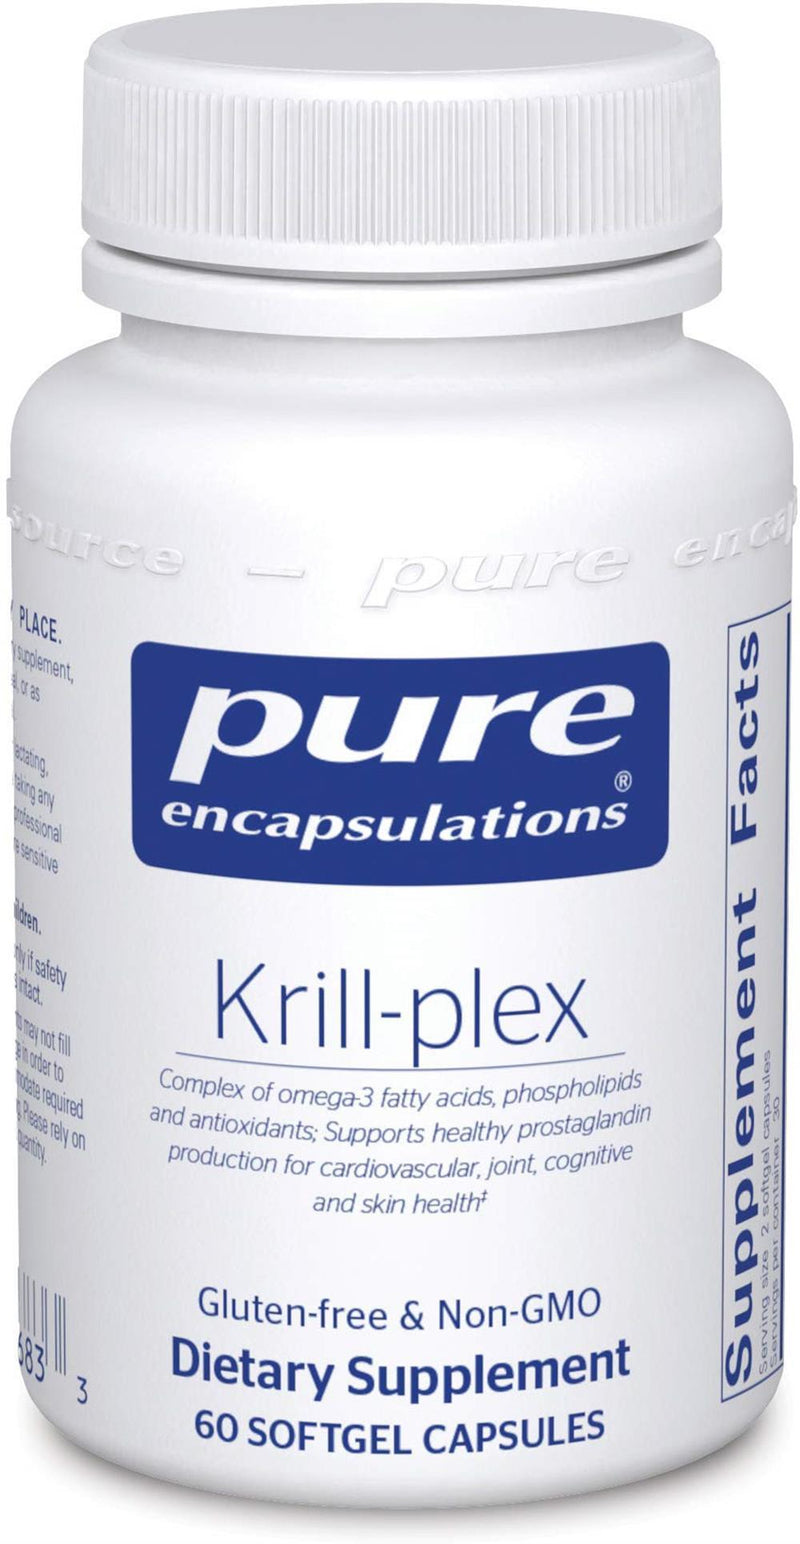 Pure Encapsulations Krill-plexÂ  -- 60 Capsules